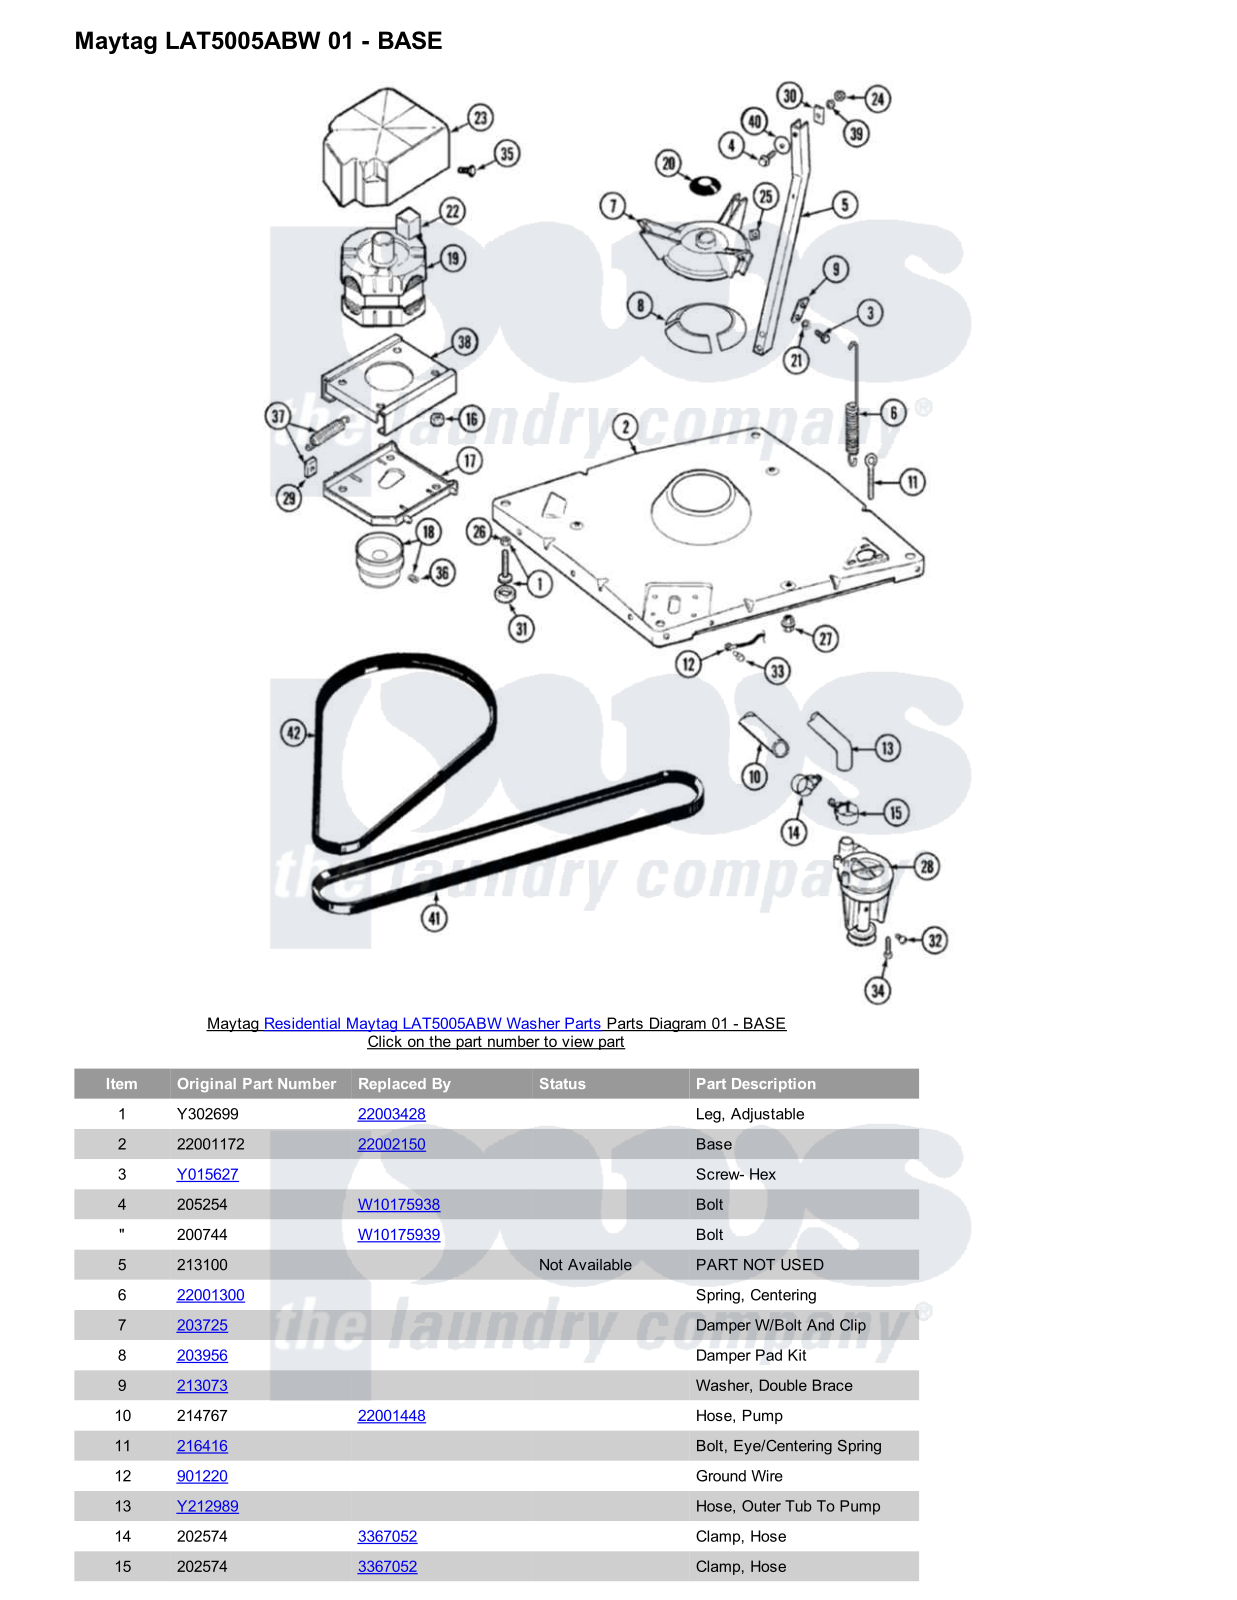 Maytag LAT5005ABW Parts Diagram